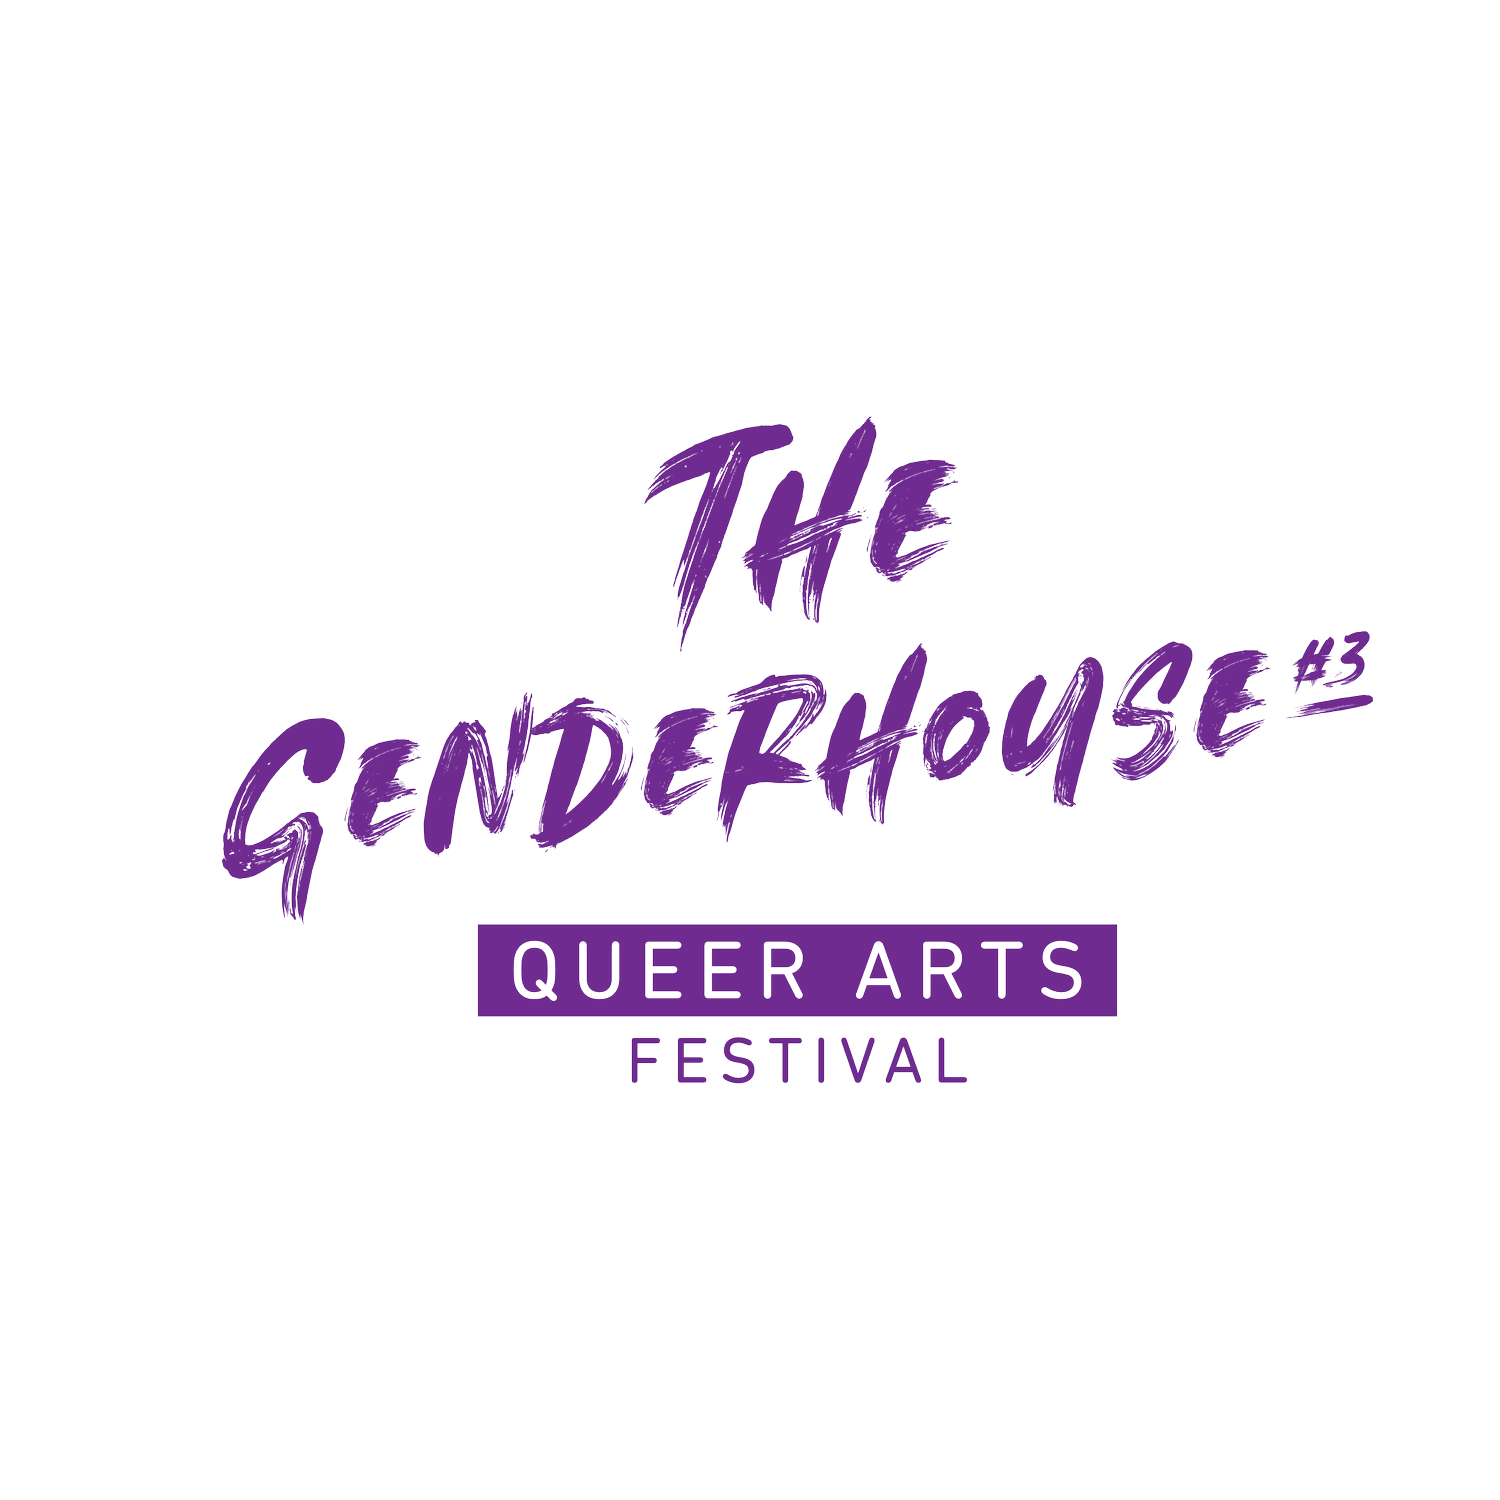 The GENDERHOUSE Festival